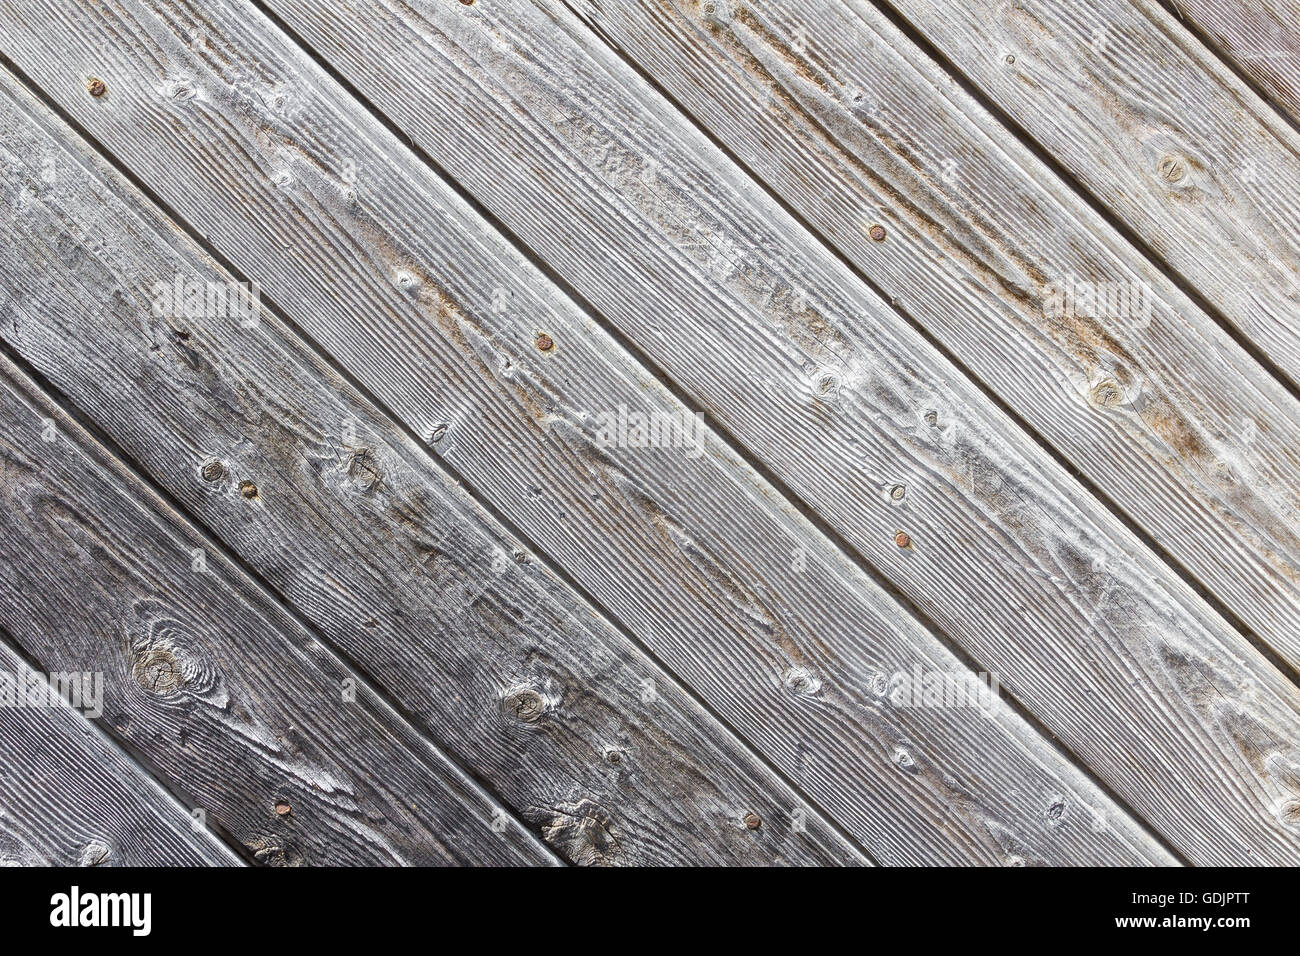 wood plank background Stock Photo